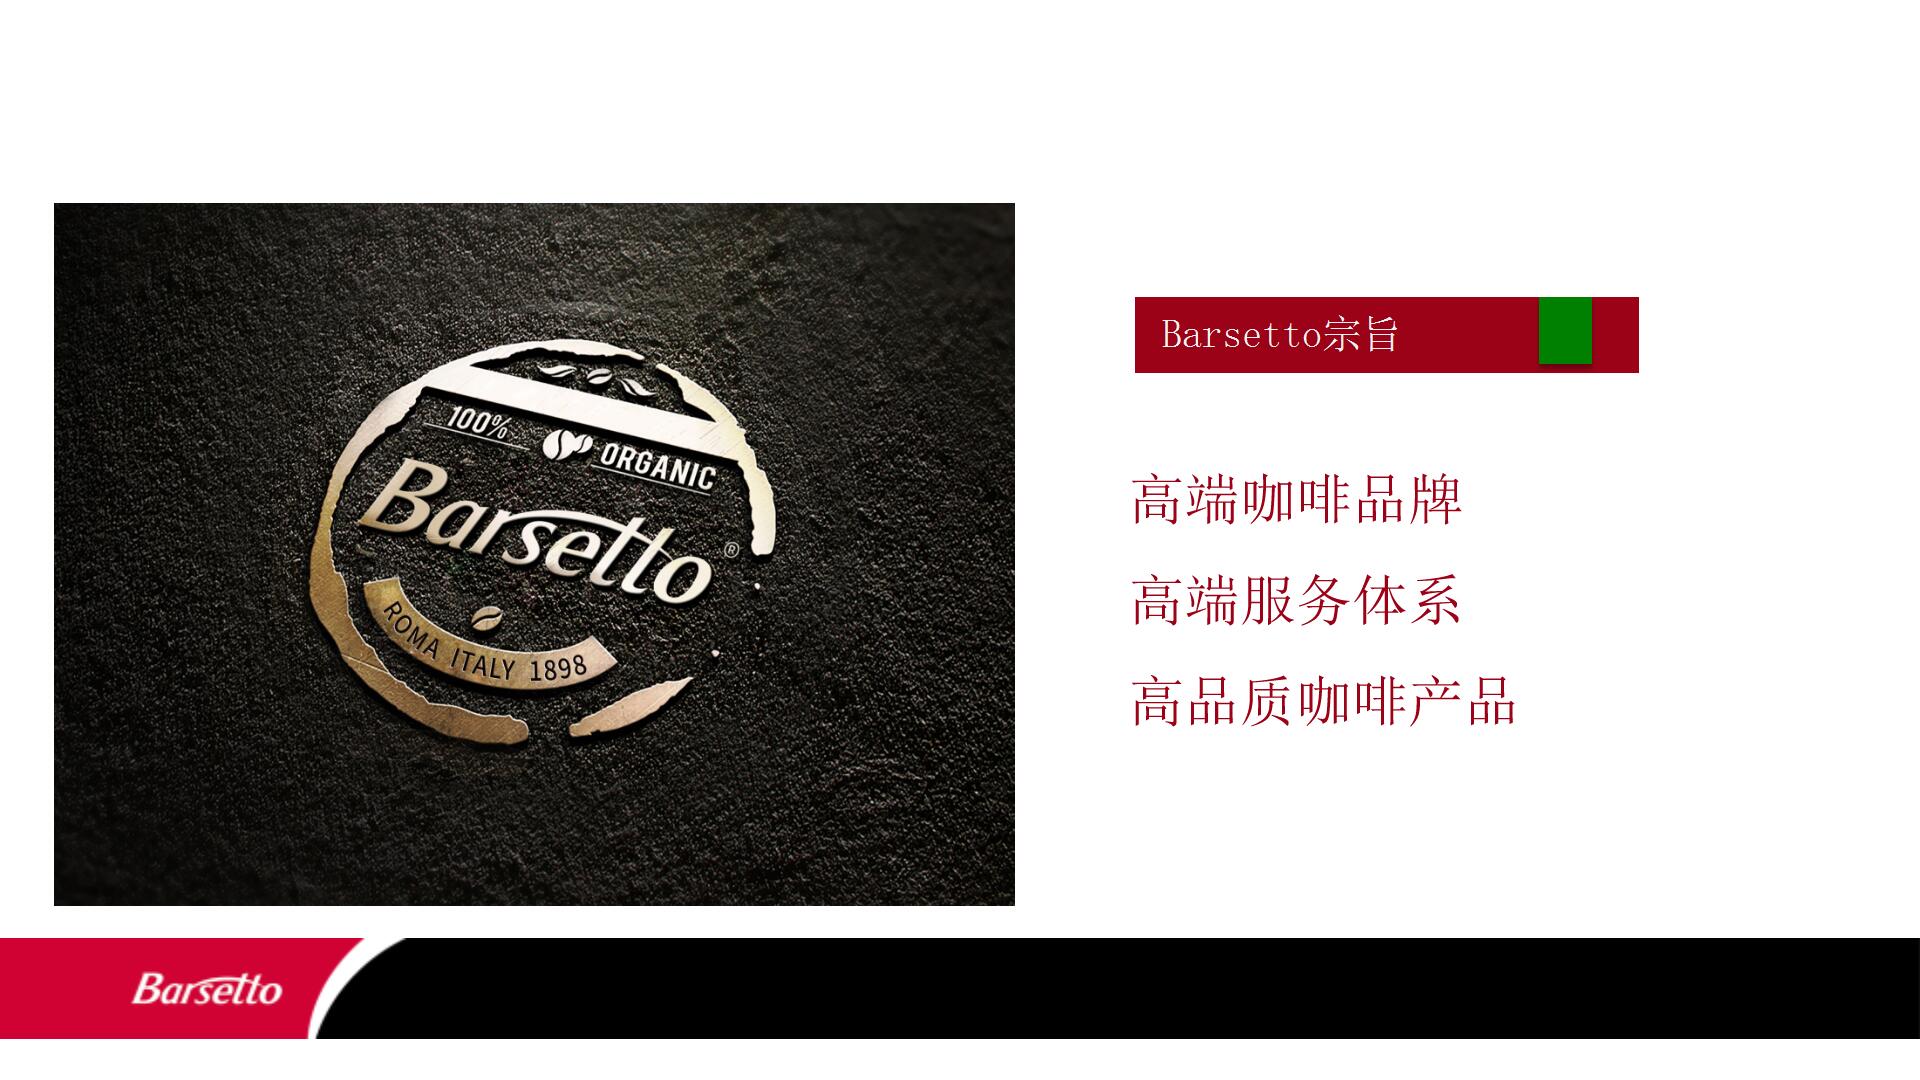 Barsetto 咖啡机方案 (9)